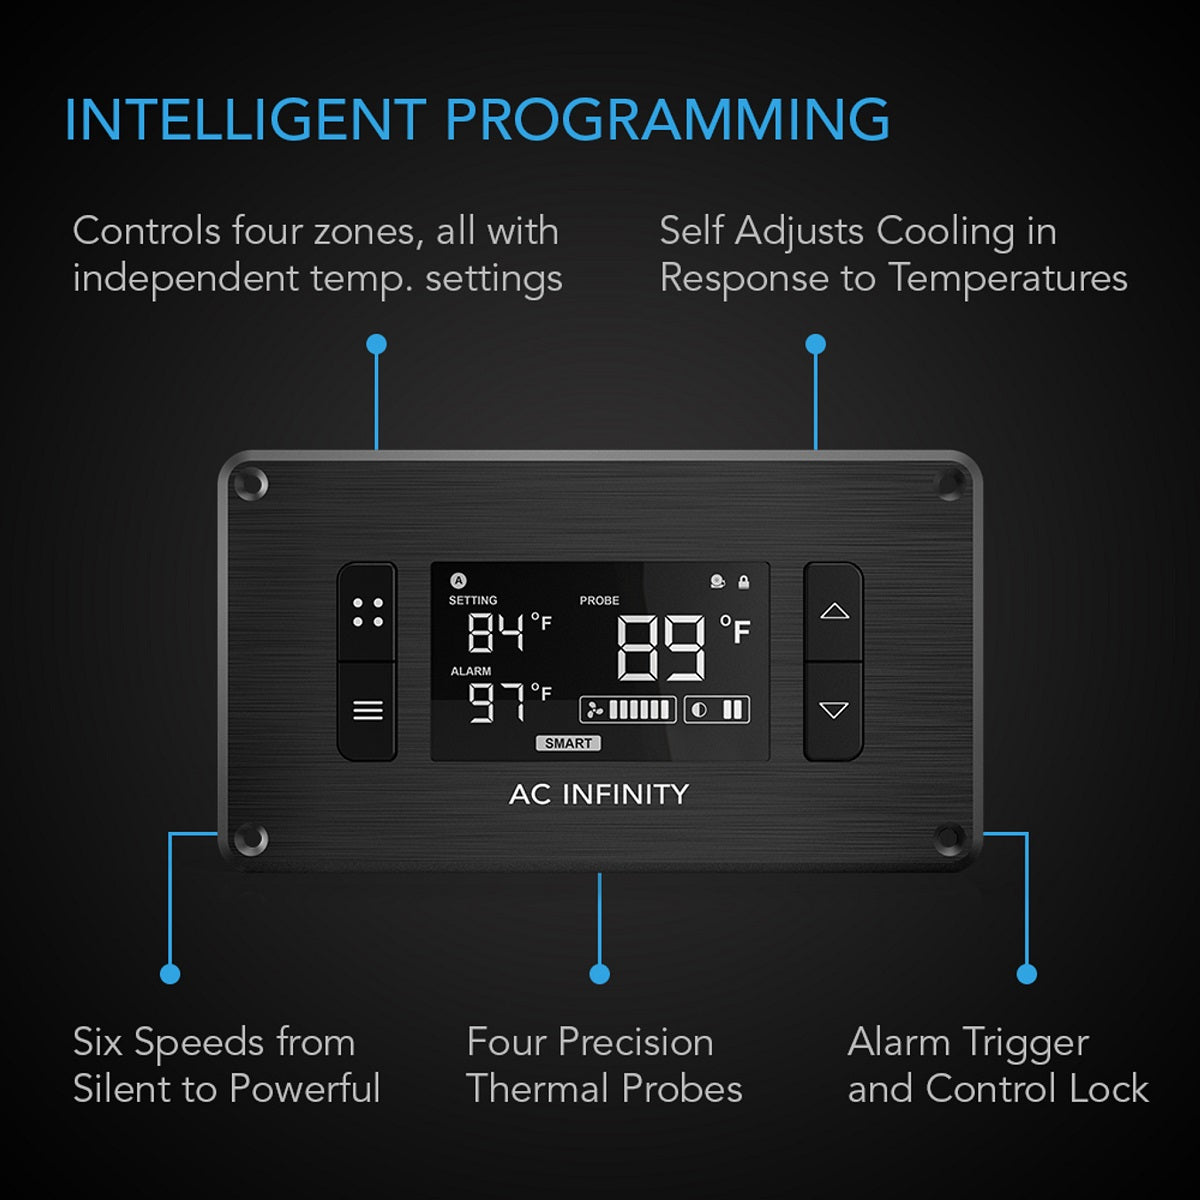 AC Infinity Controller 8 - Controla la temperatura y la humedad en 4 zonas